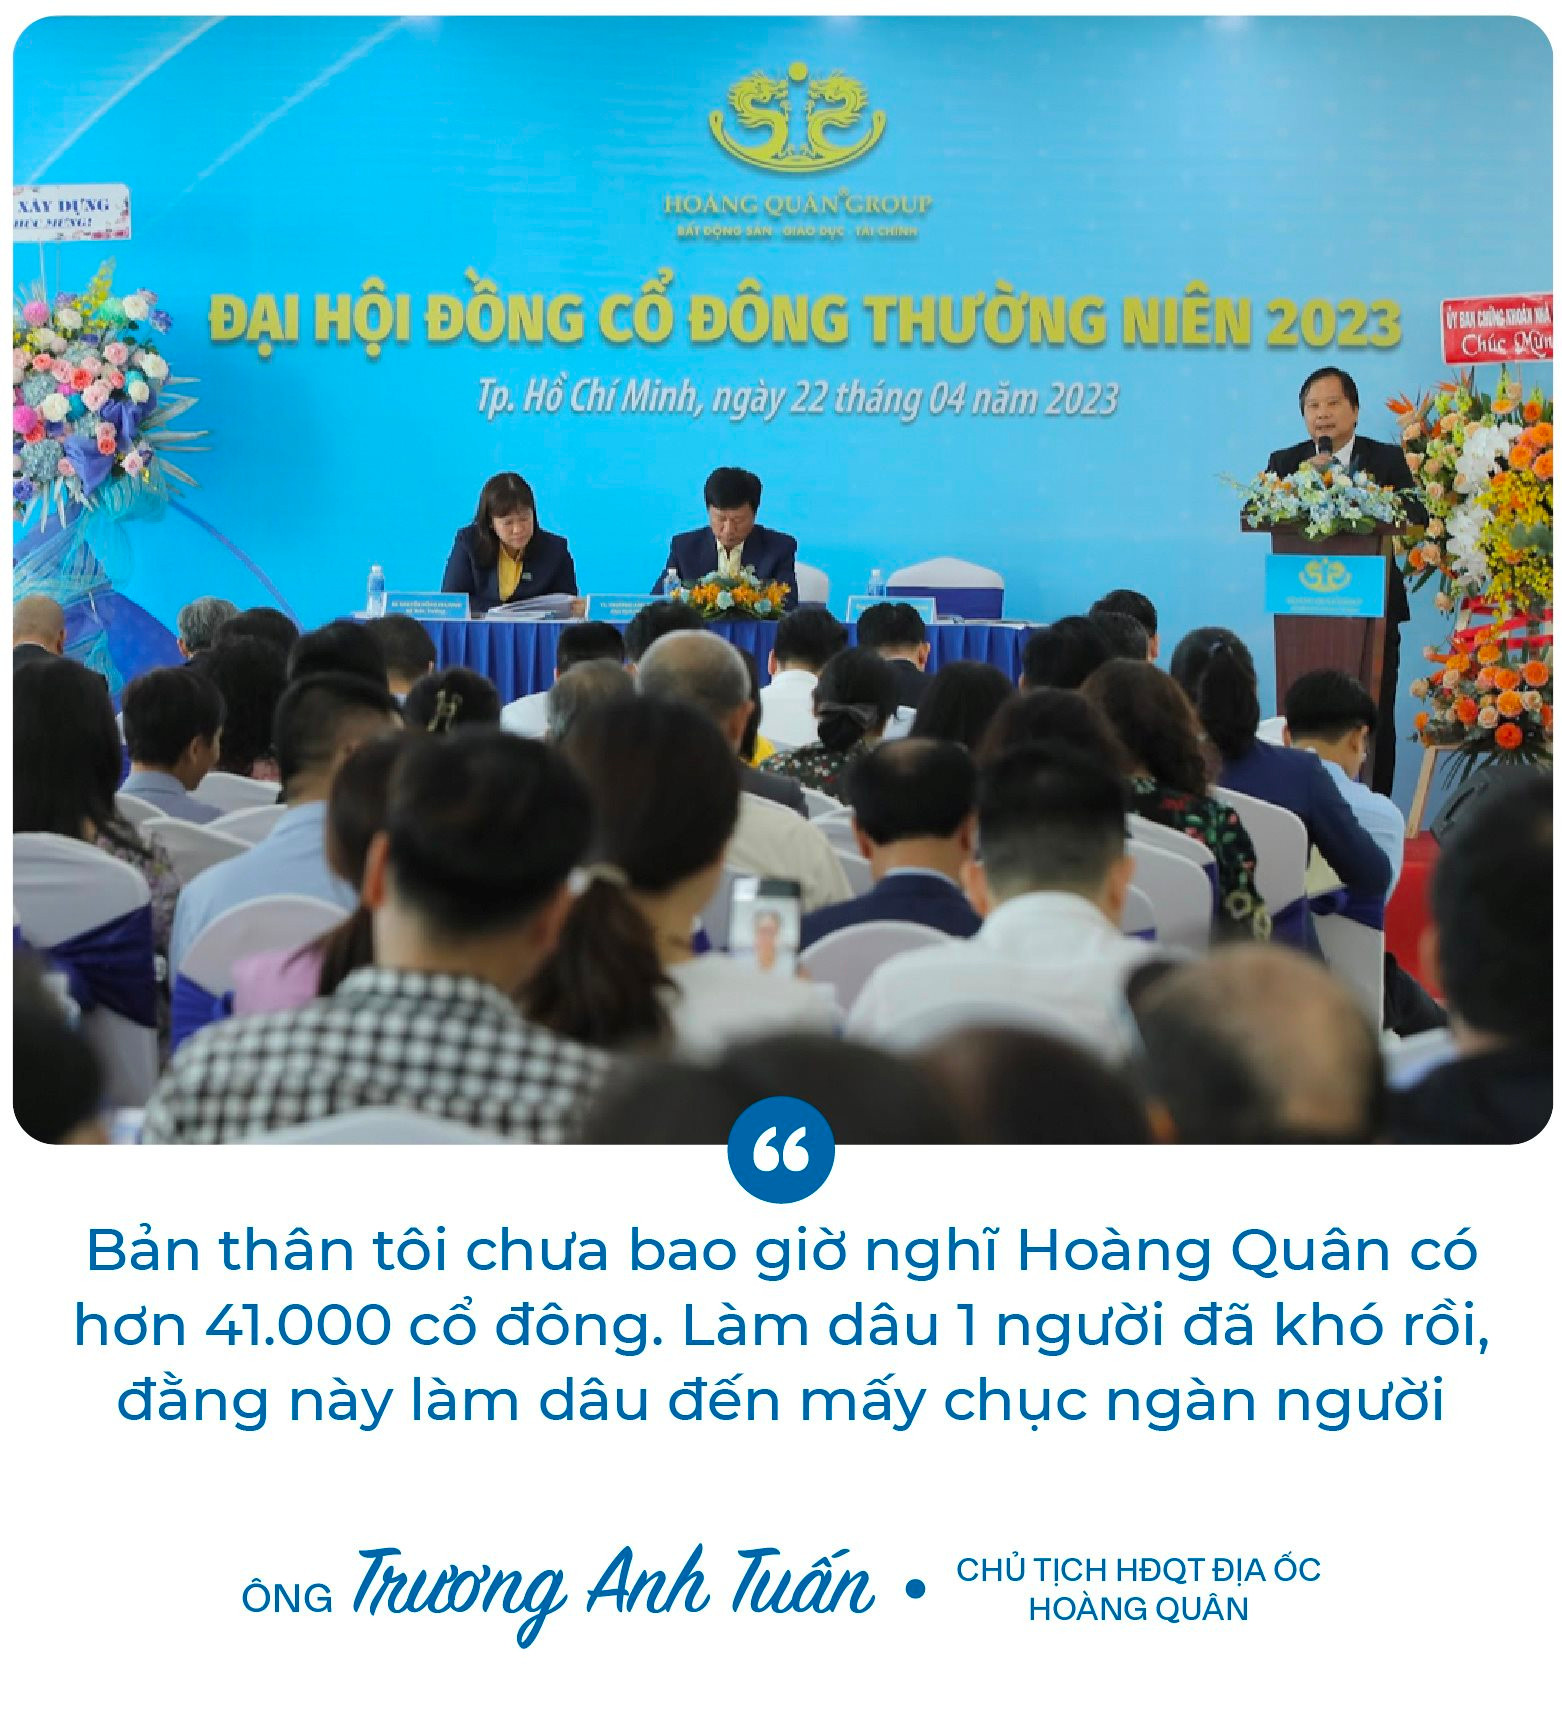 Chủ tịch Trương Anh Tuấn: ﻿“8 năm rồi Hoàng Quân (HQC) không đạt kế hoạch, và tôi cũng nói thật năm nay chưa chắc đạt” - Ảnh 1.